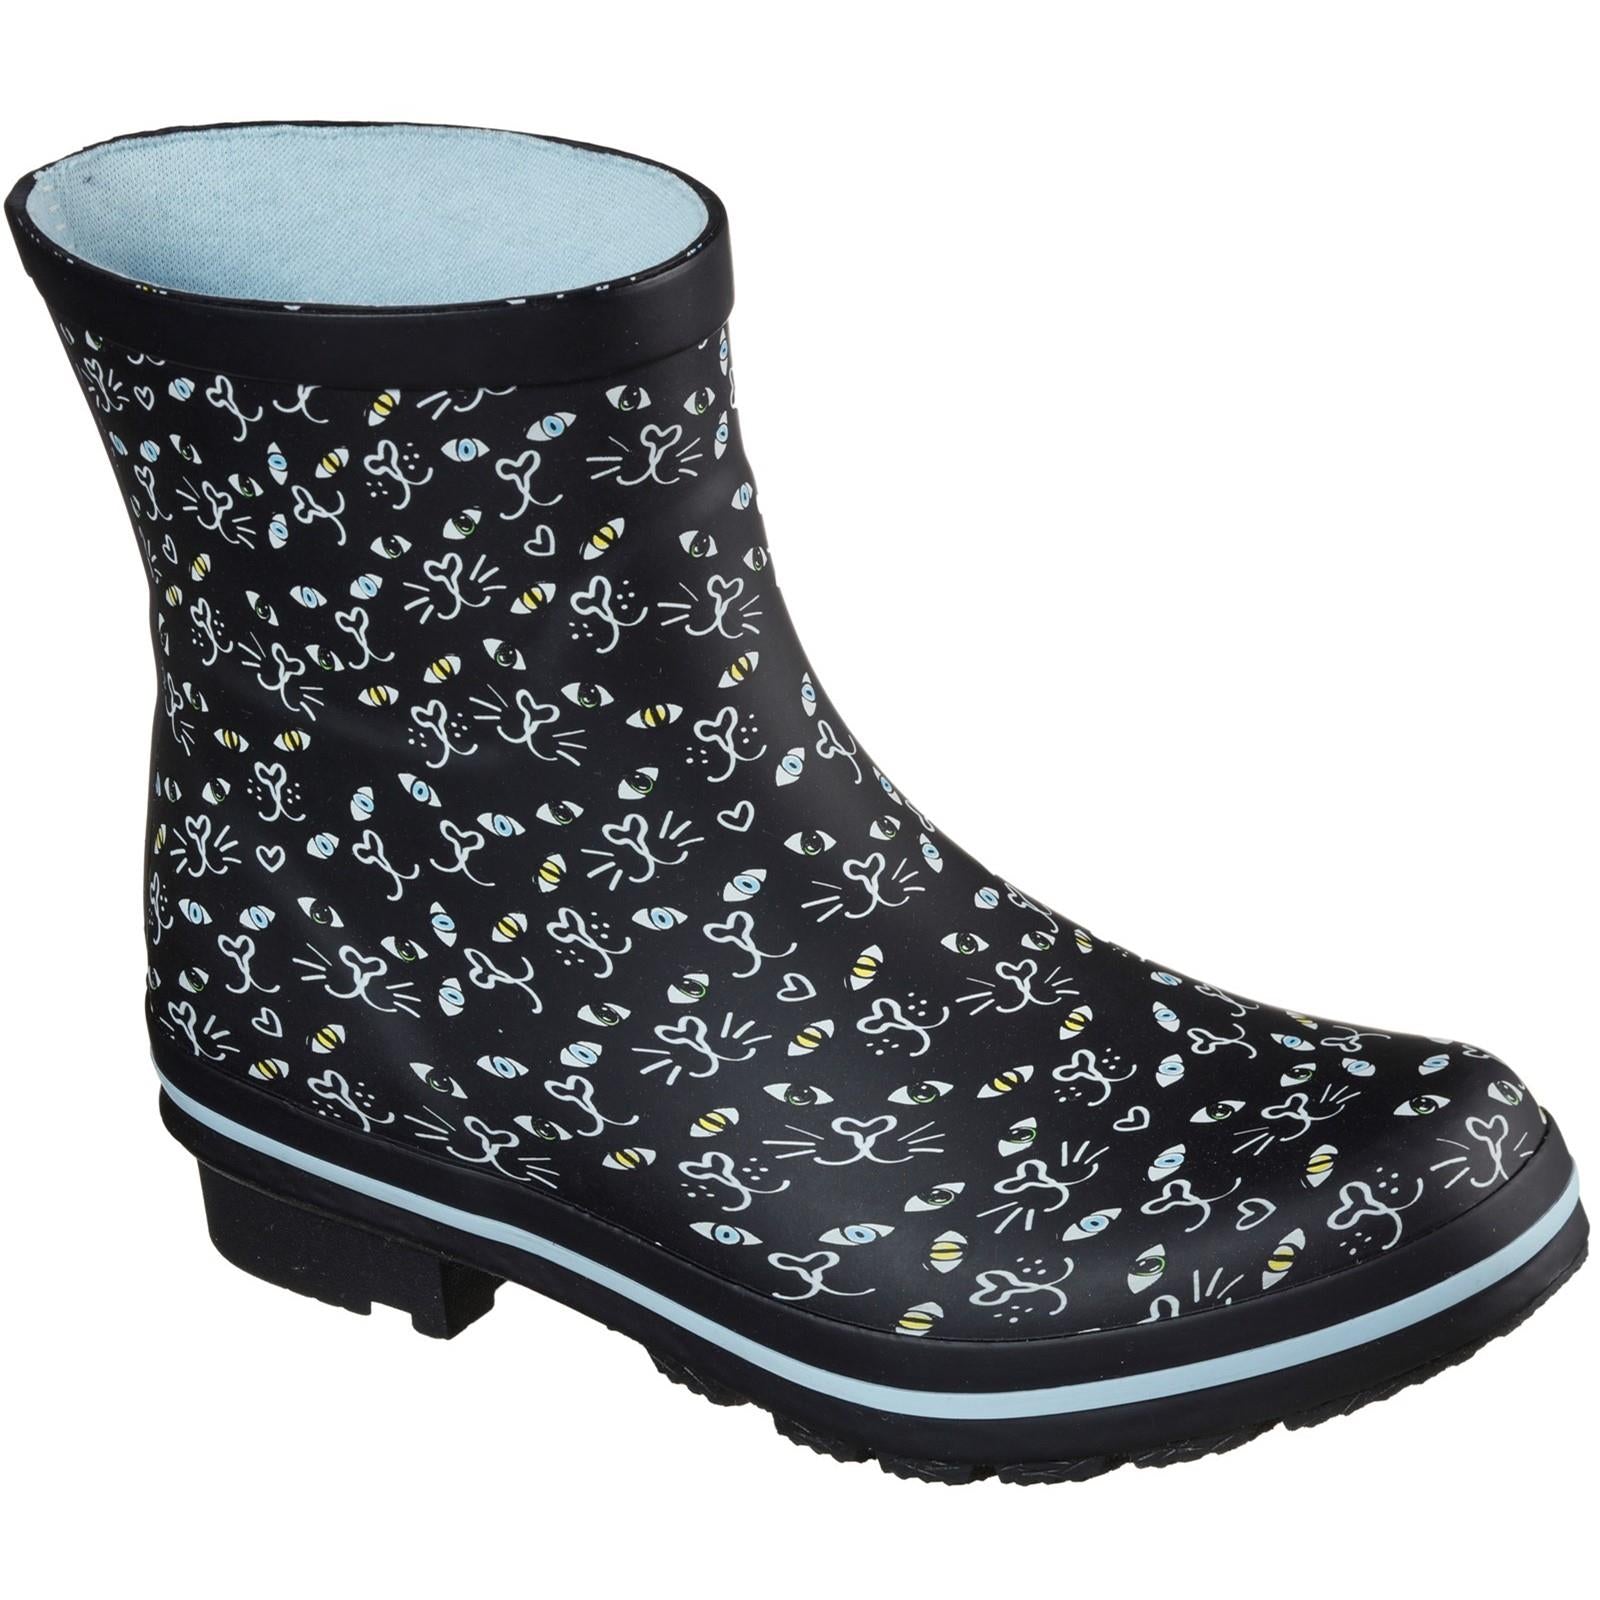 Skechers BOBS Rain Check Misty Eye women's waterproof wellington boot #113158